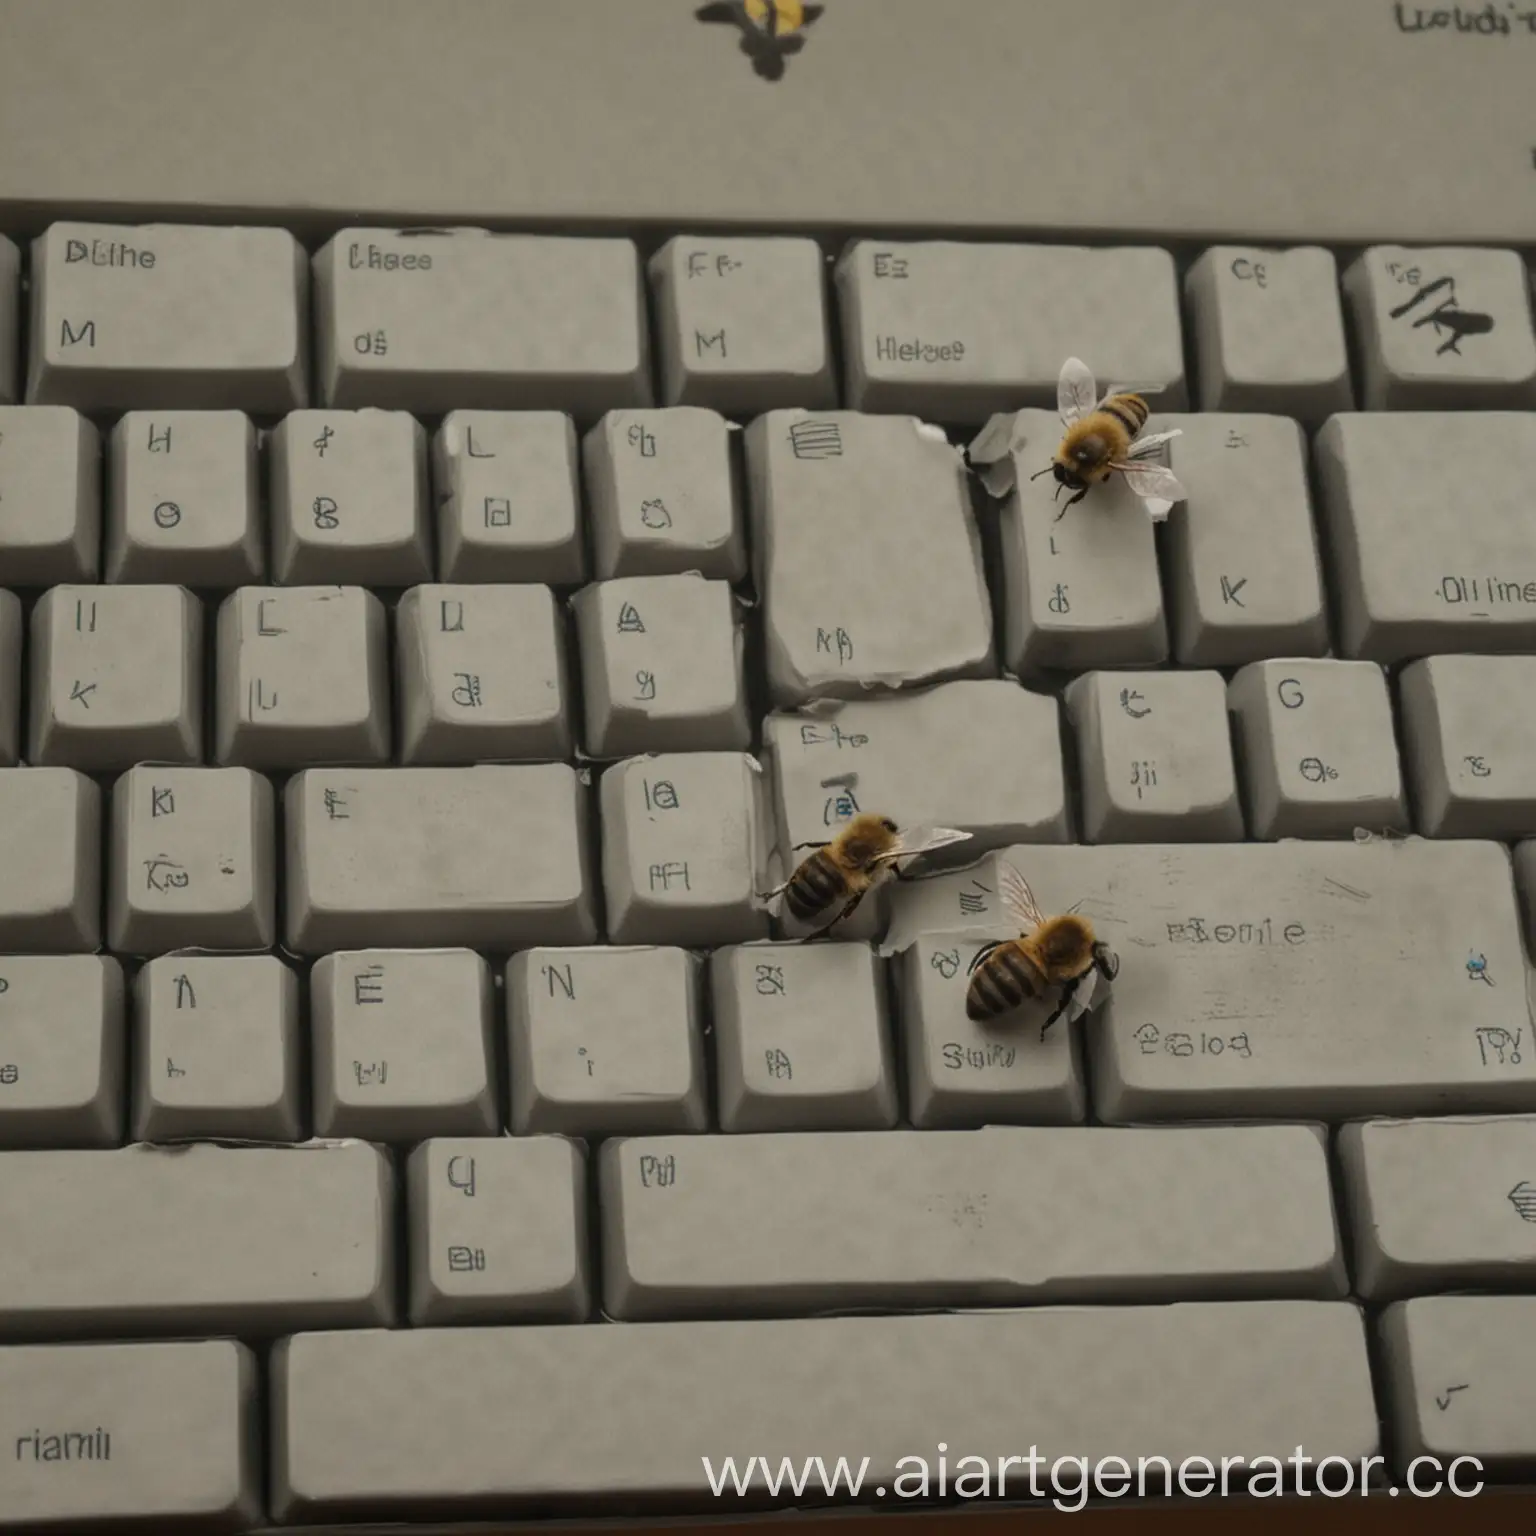 пчела билайн залетела в окно к егору 2036 и срет на клавиатуру
